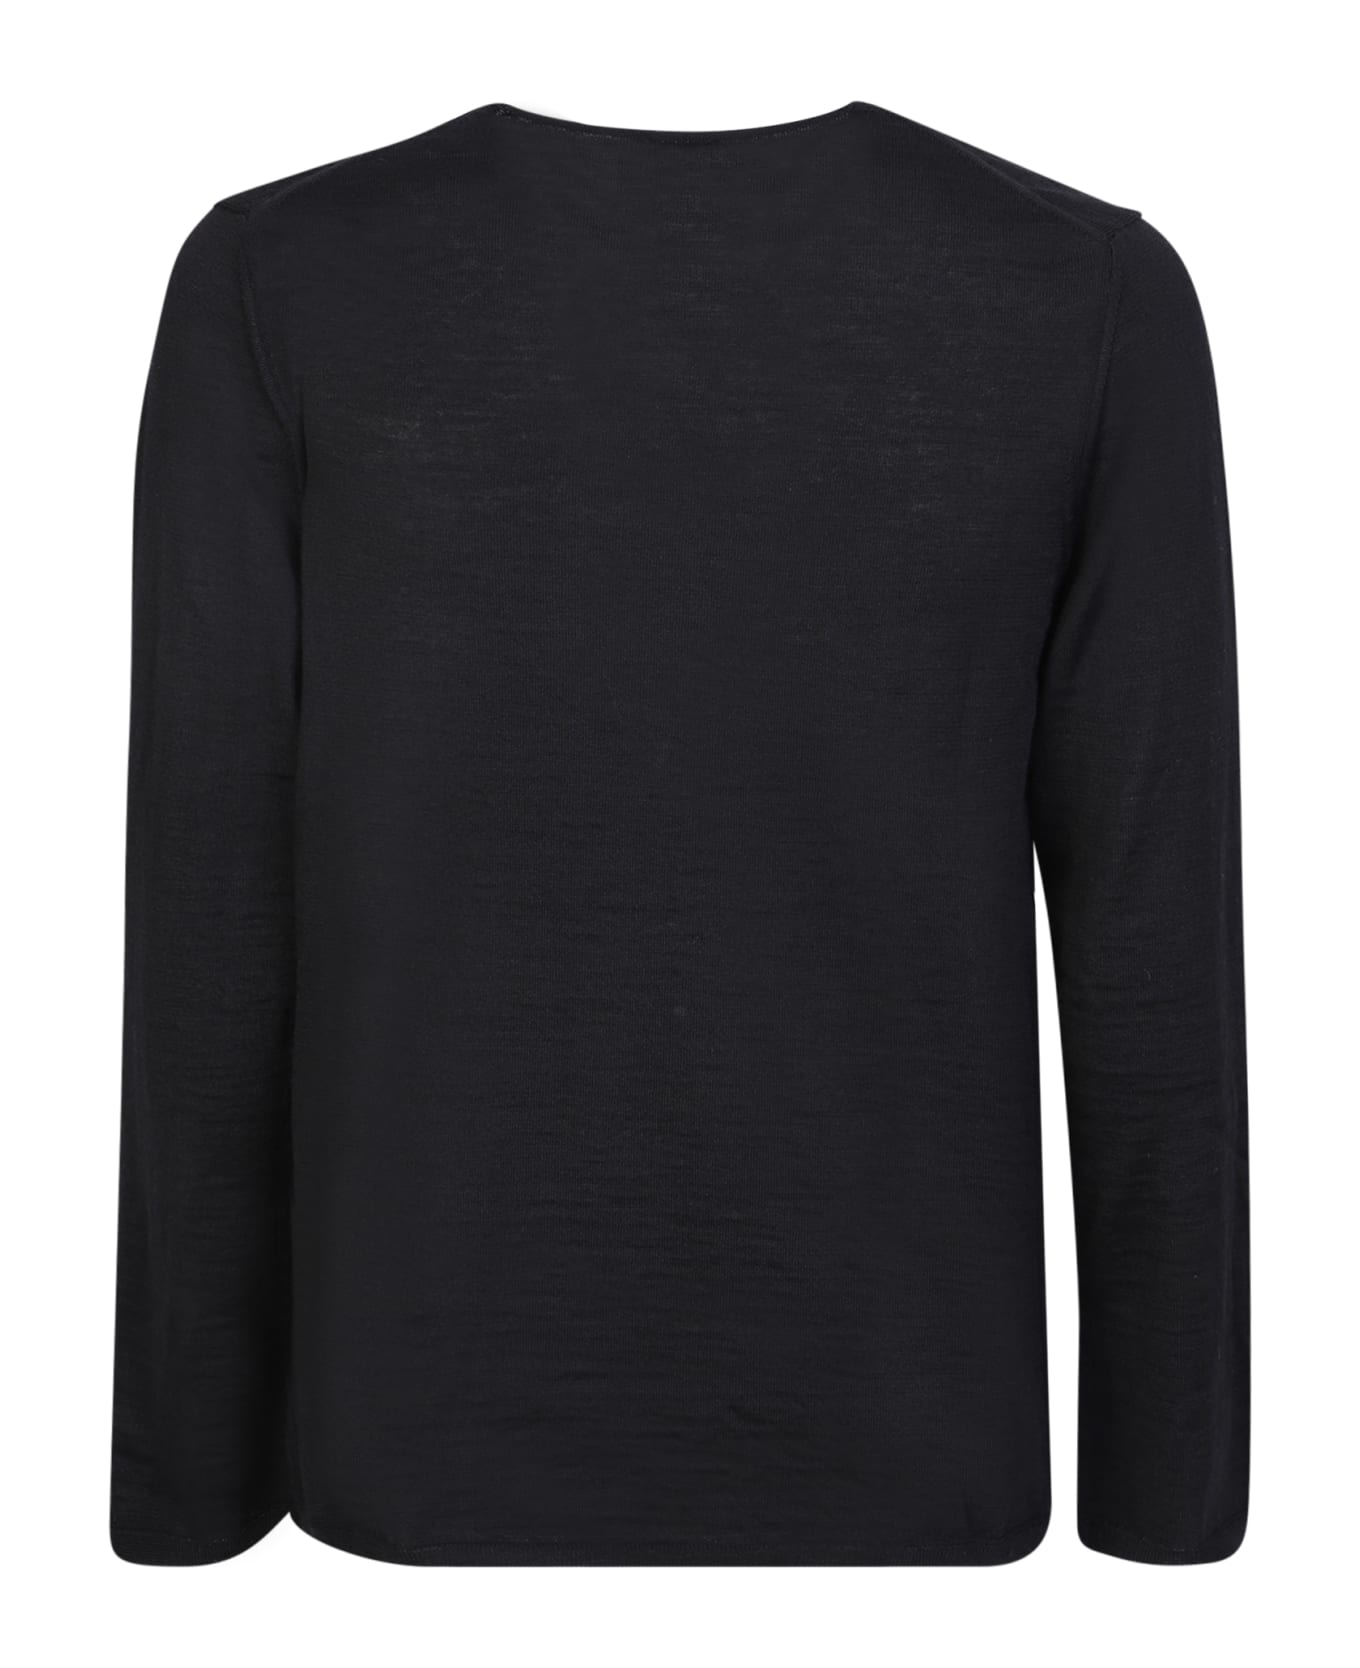 Comme des Garçons Shirt Pixel Print Sweater Comme Des Garcons Shirt Black - Black